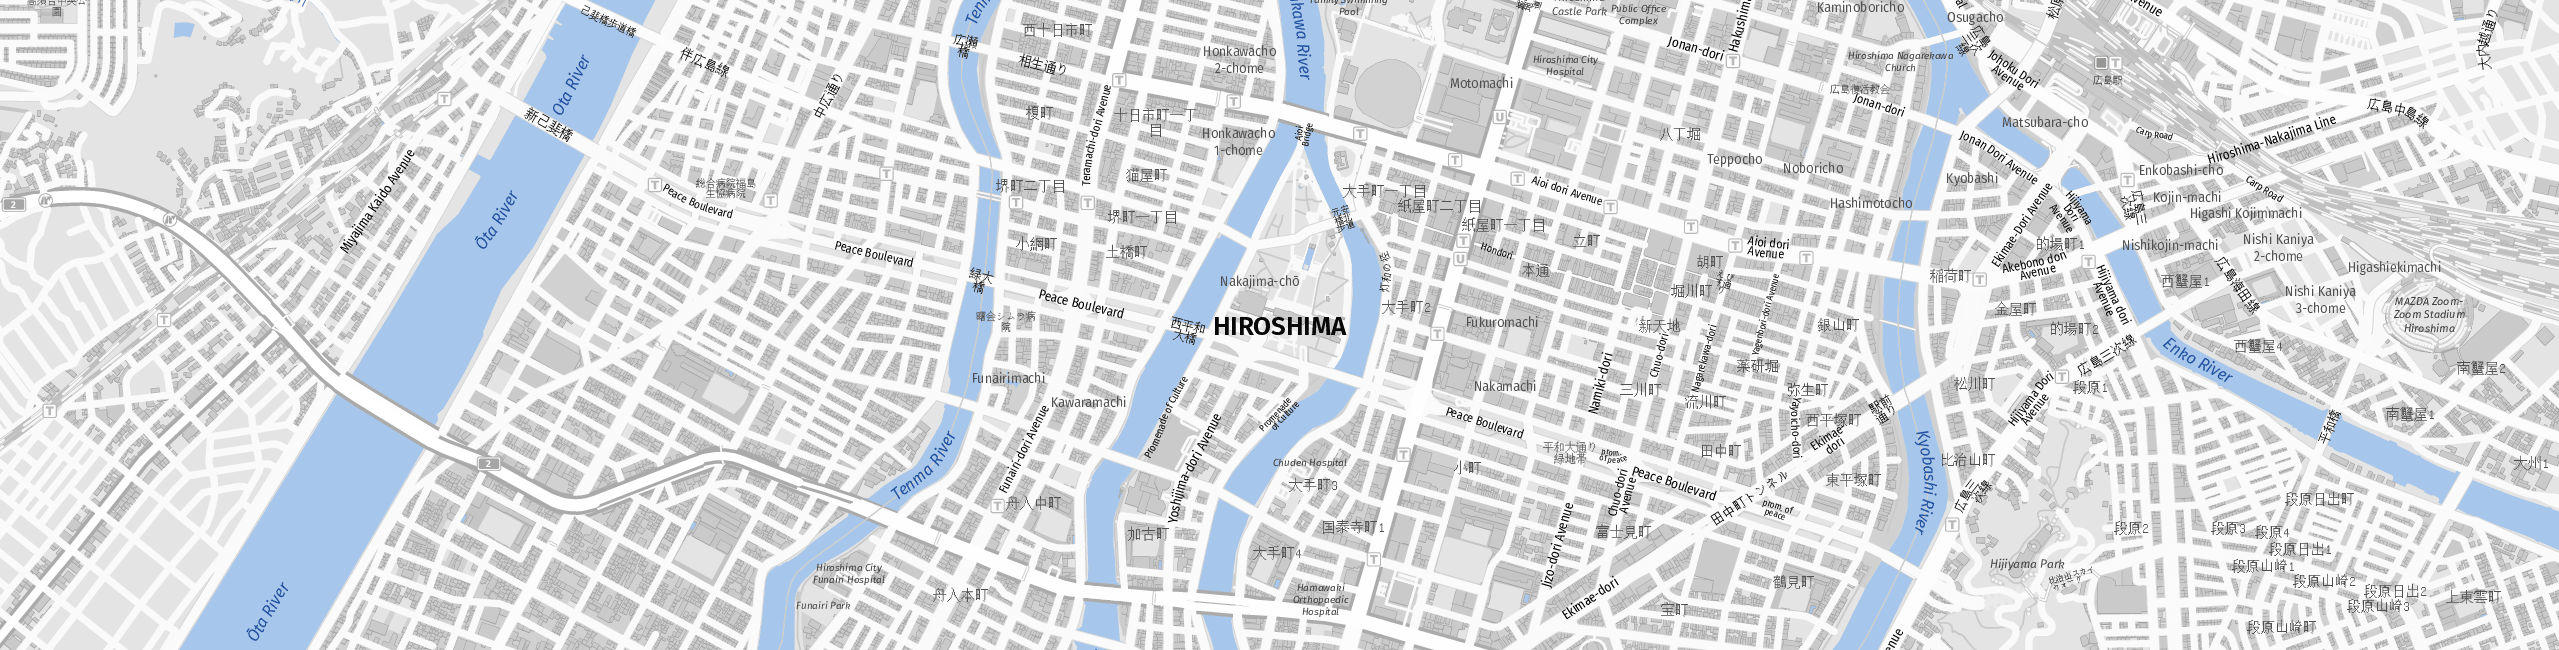 Stadtplan Hiroshima zum Downloaden.